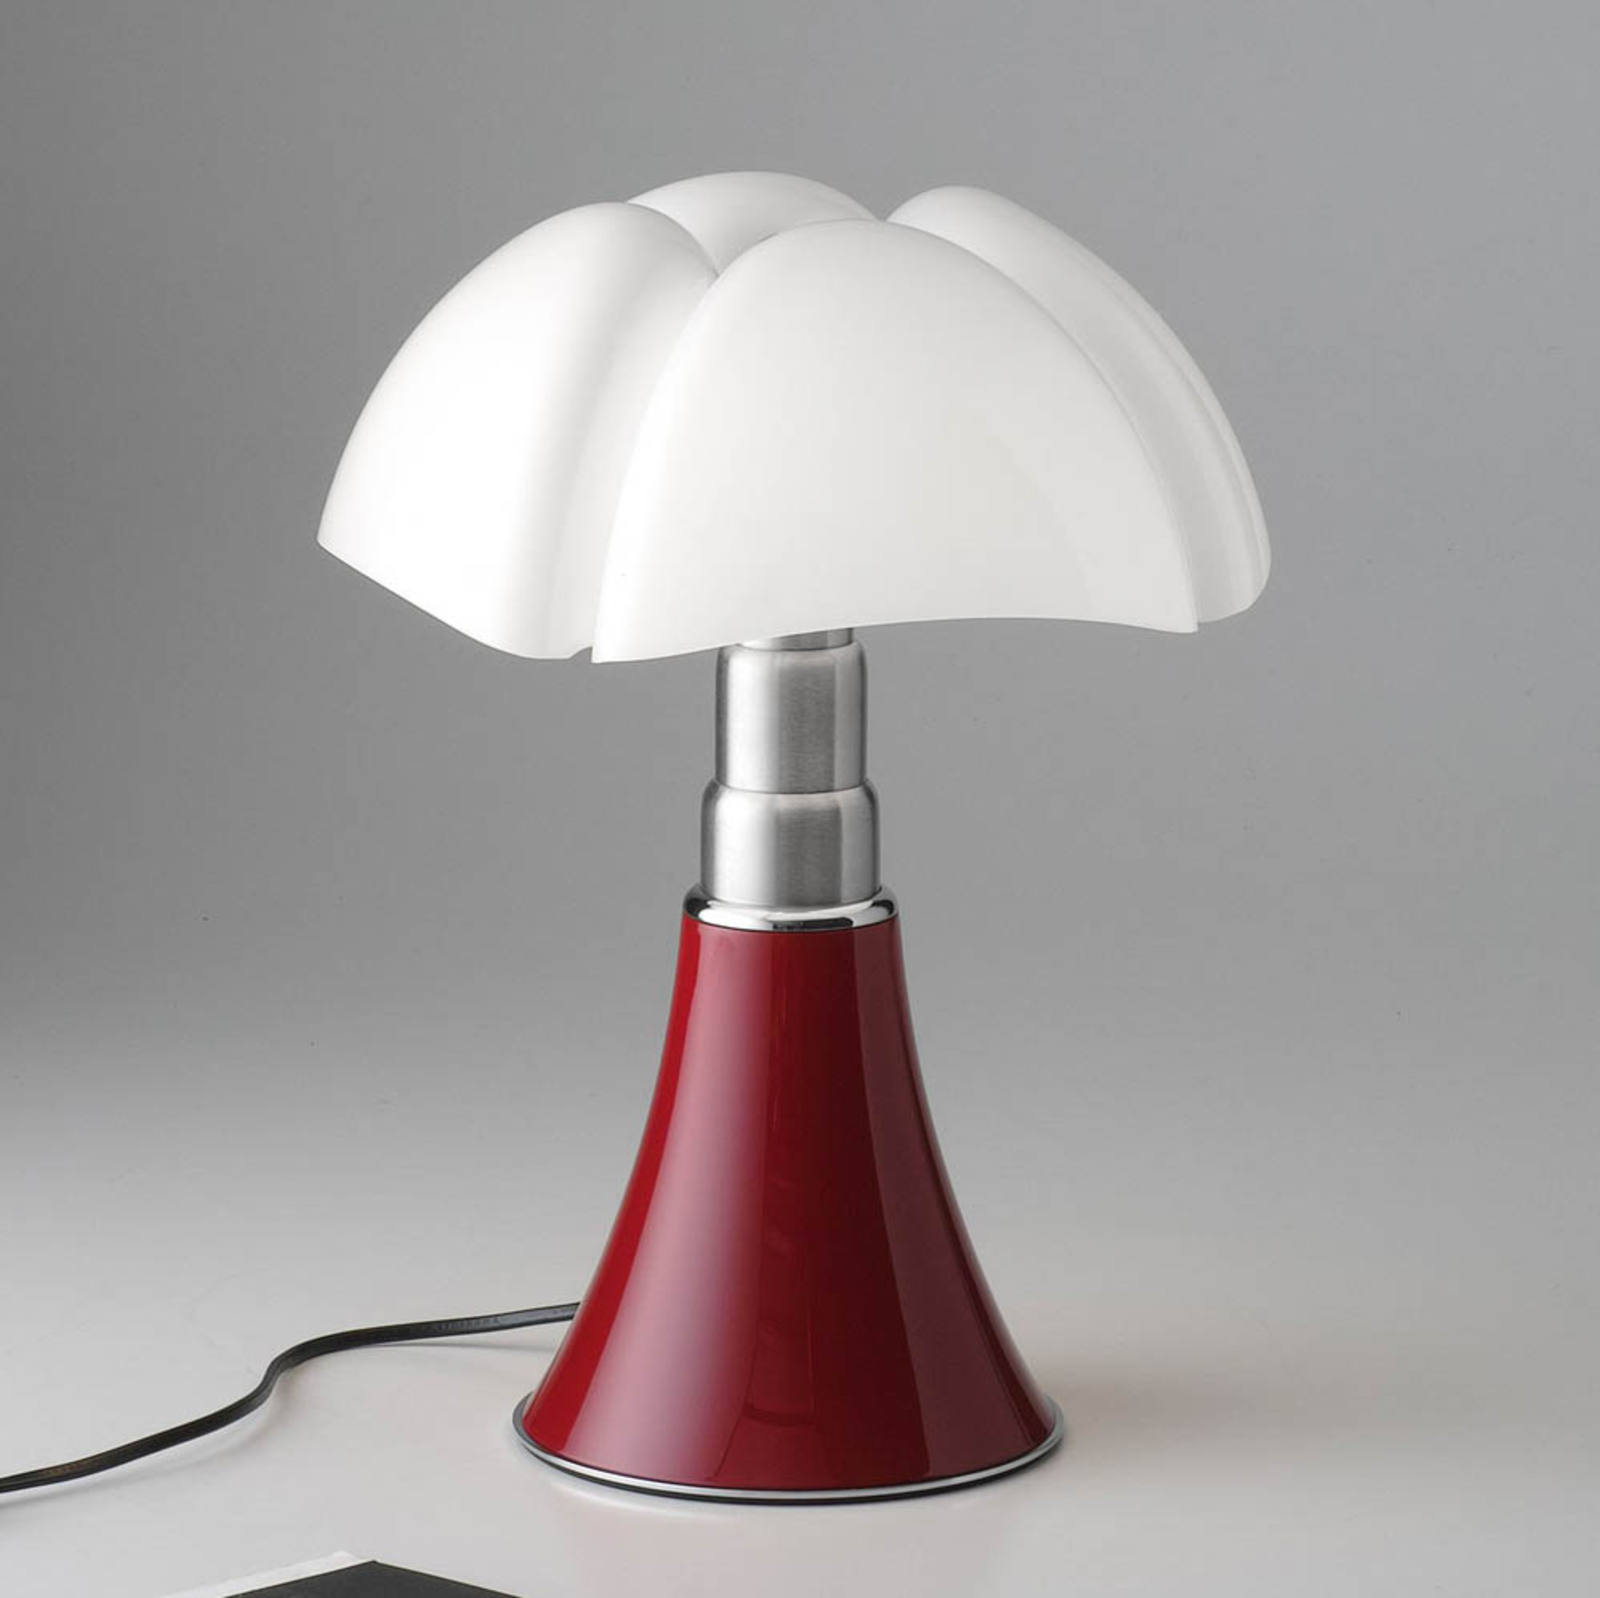 Martinelli Luce Minipipistrello tafellamp rood